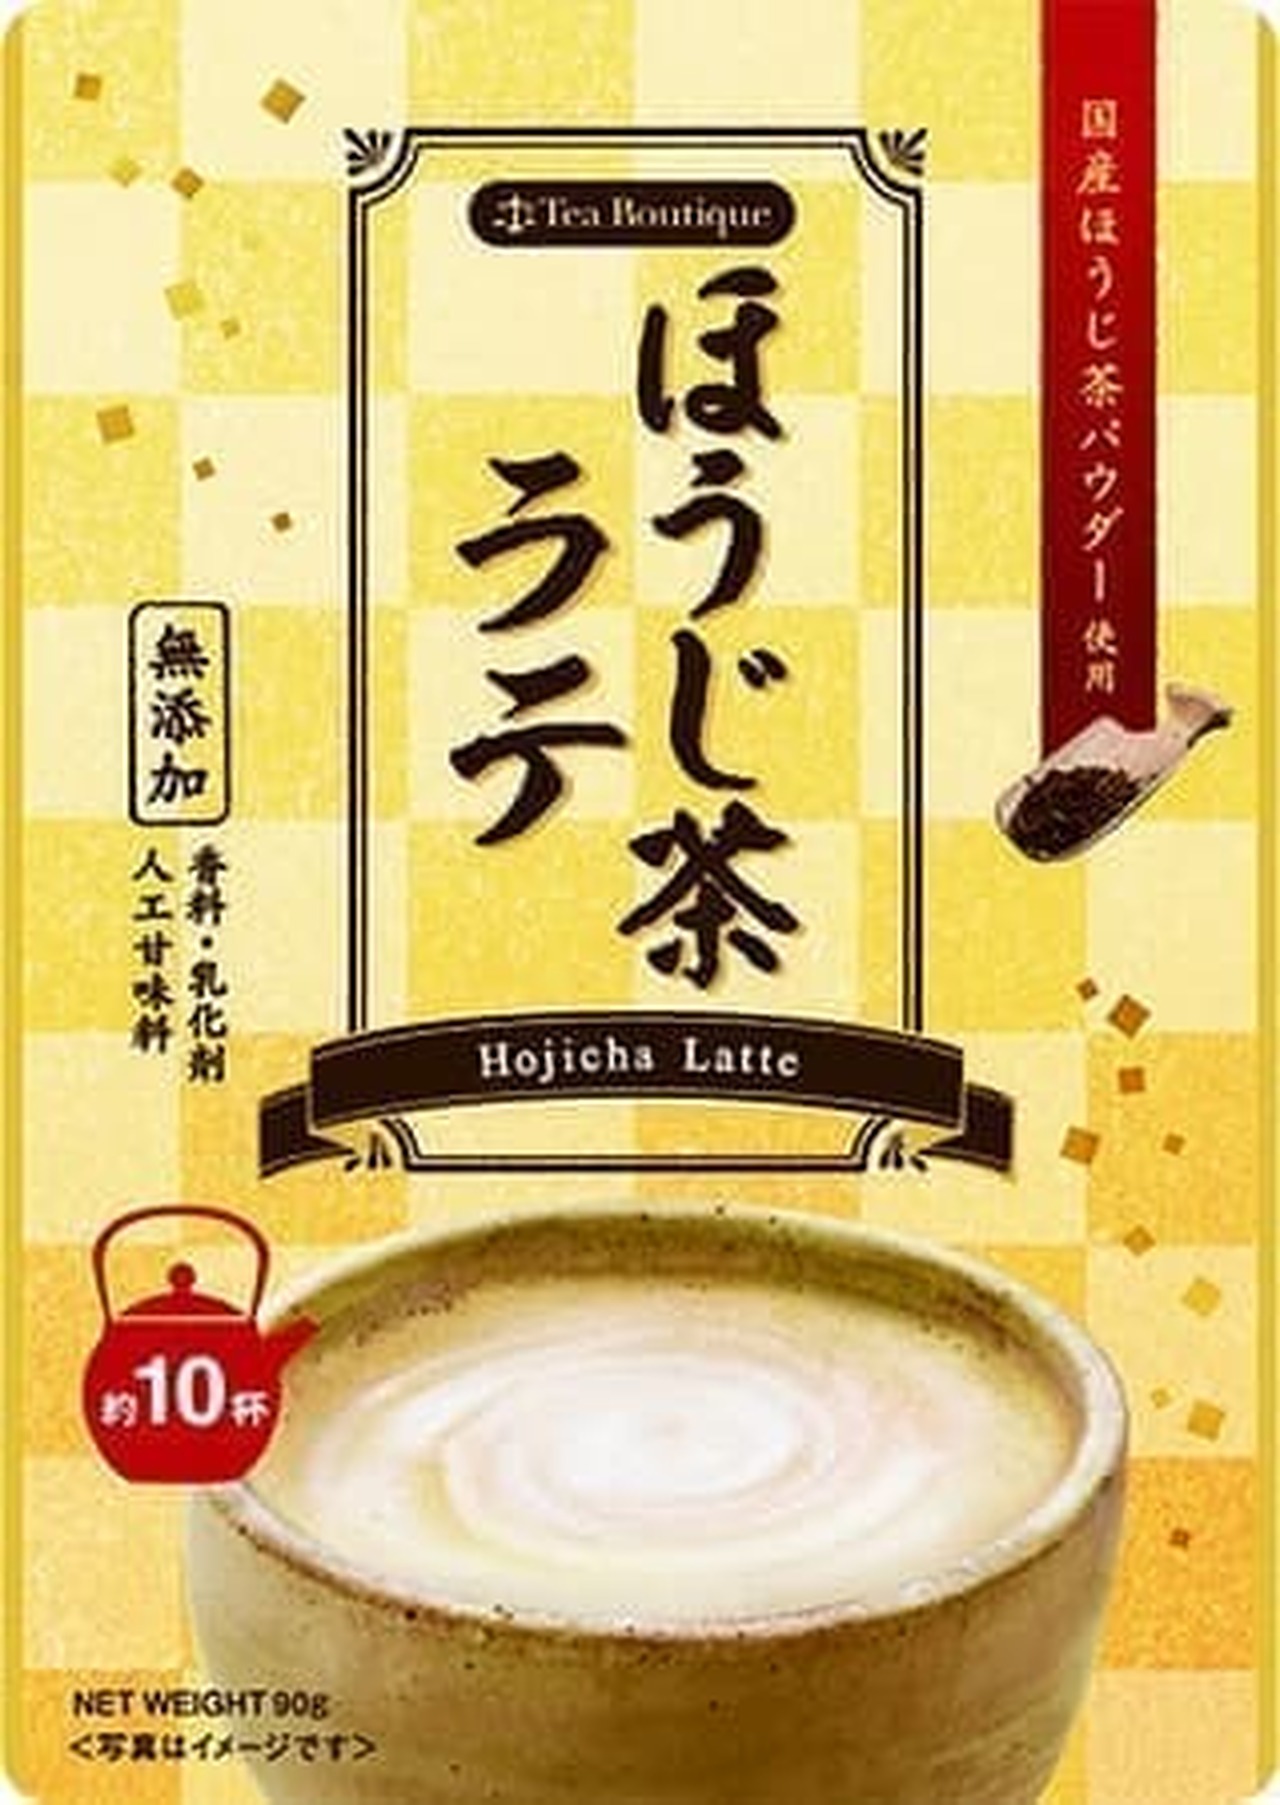 Tea boutique "Instant Hojicha Latte"